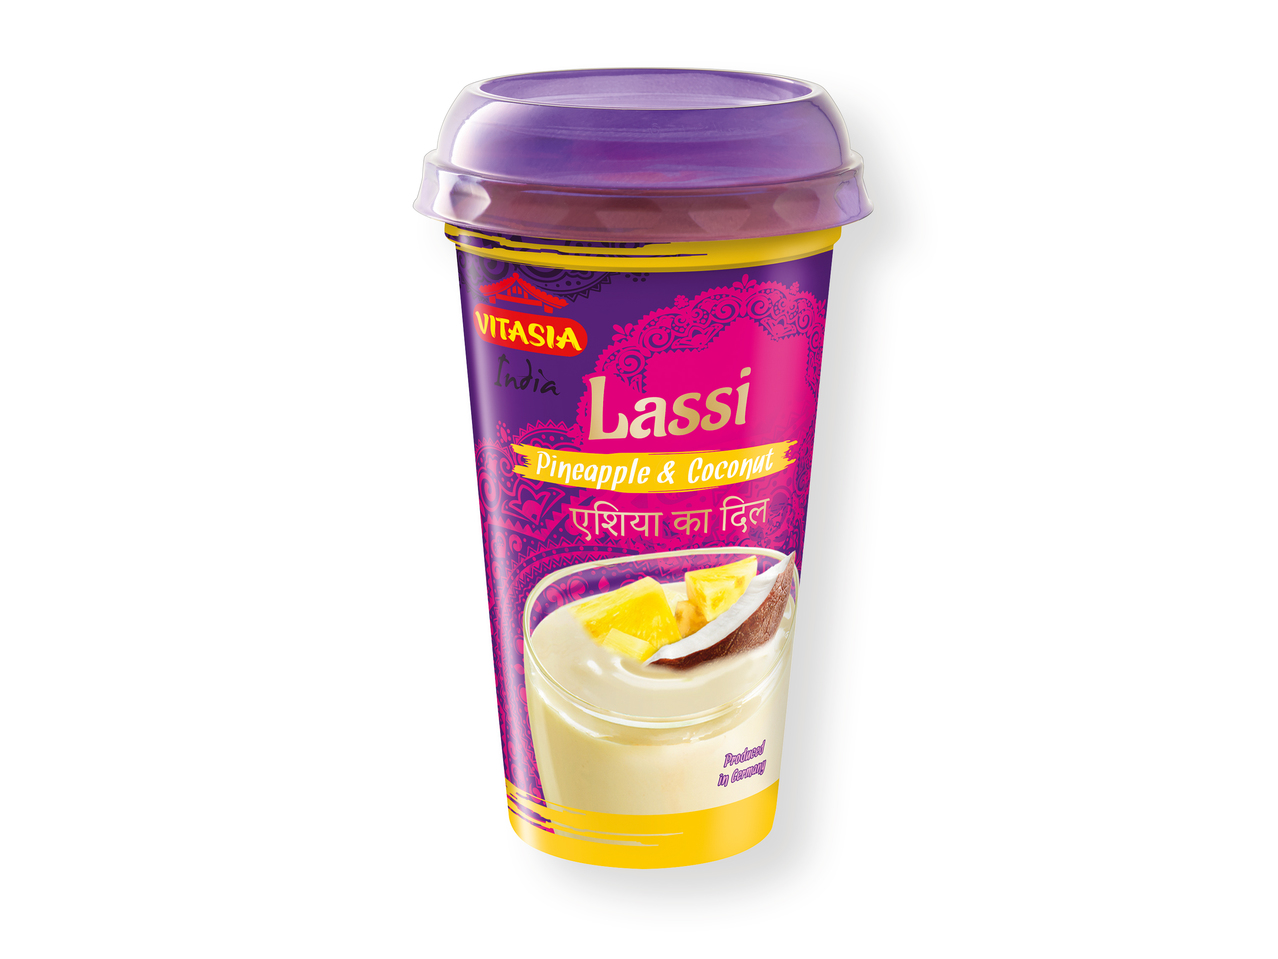 ‘Vitasia(R)' Lassi yogur bebible